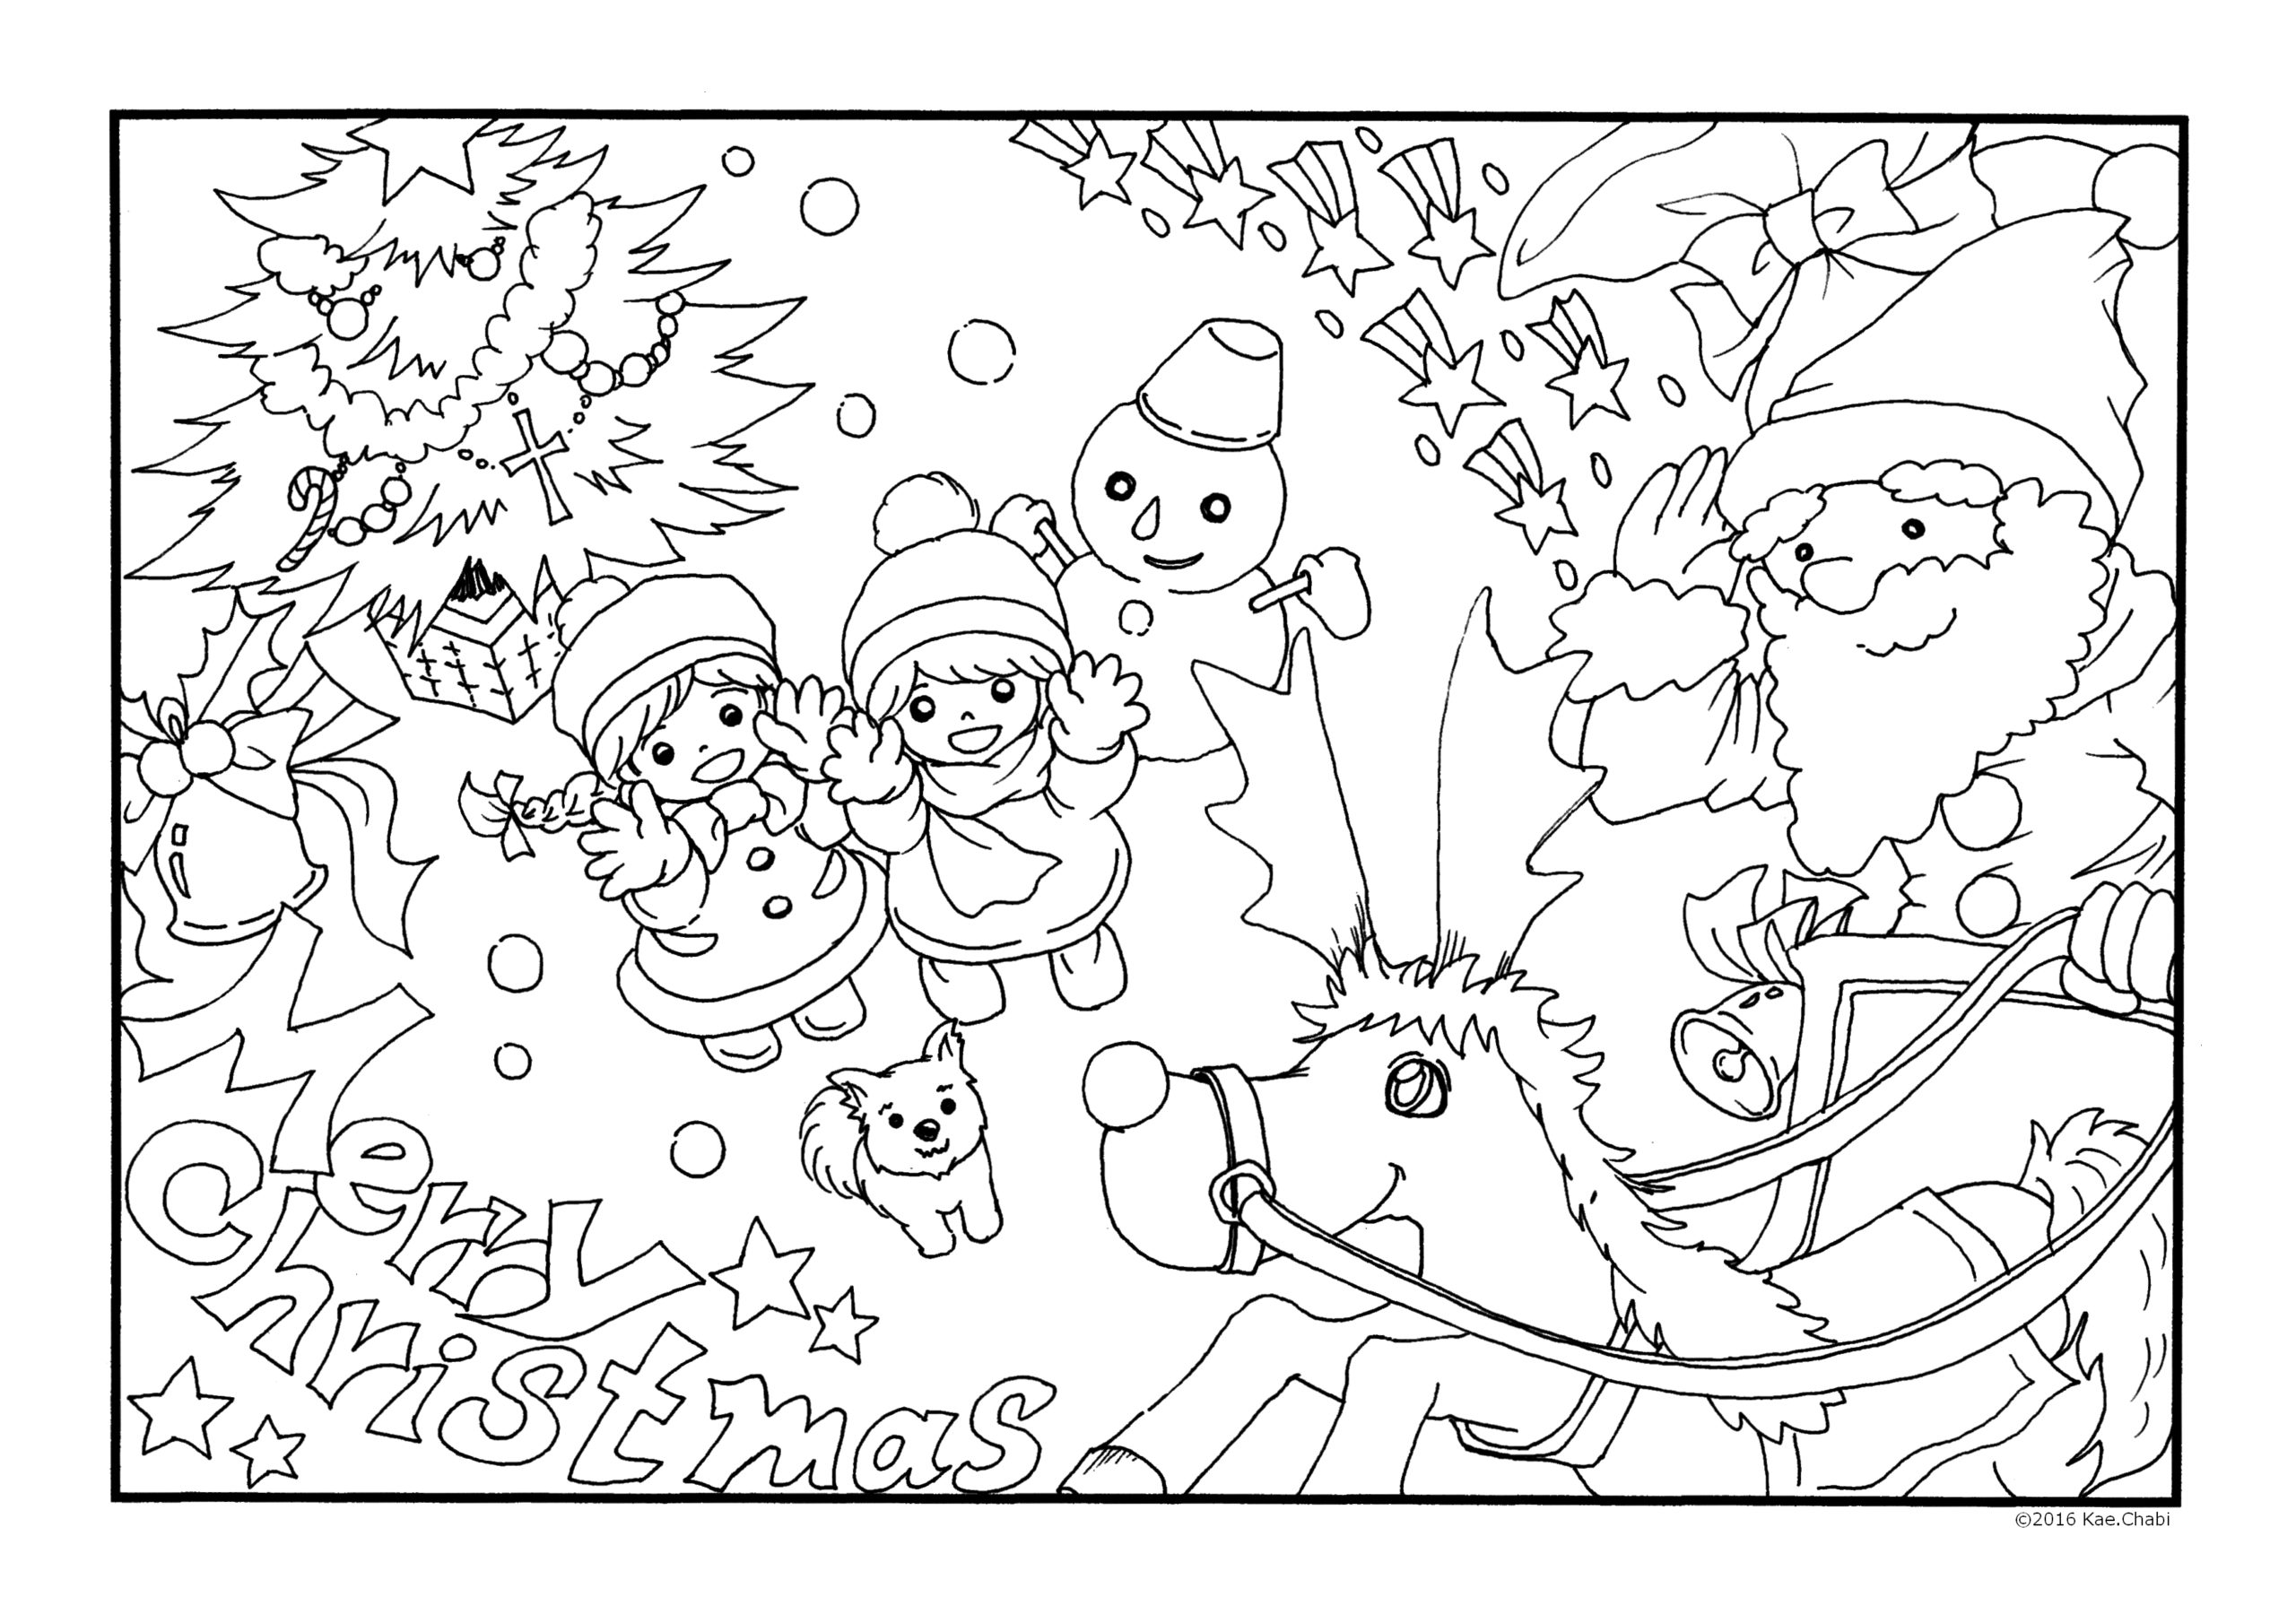 ぬりえカレンダーイラスト12月クリスマス バックナンバー2014 2017 サンタクロース トナカイ クリスマスツリー かえちゃびのぬりえカレンダー